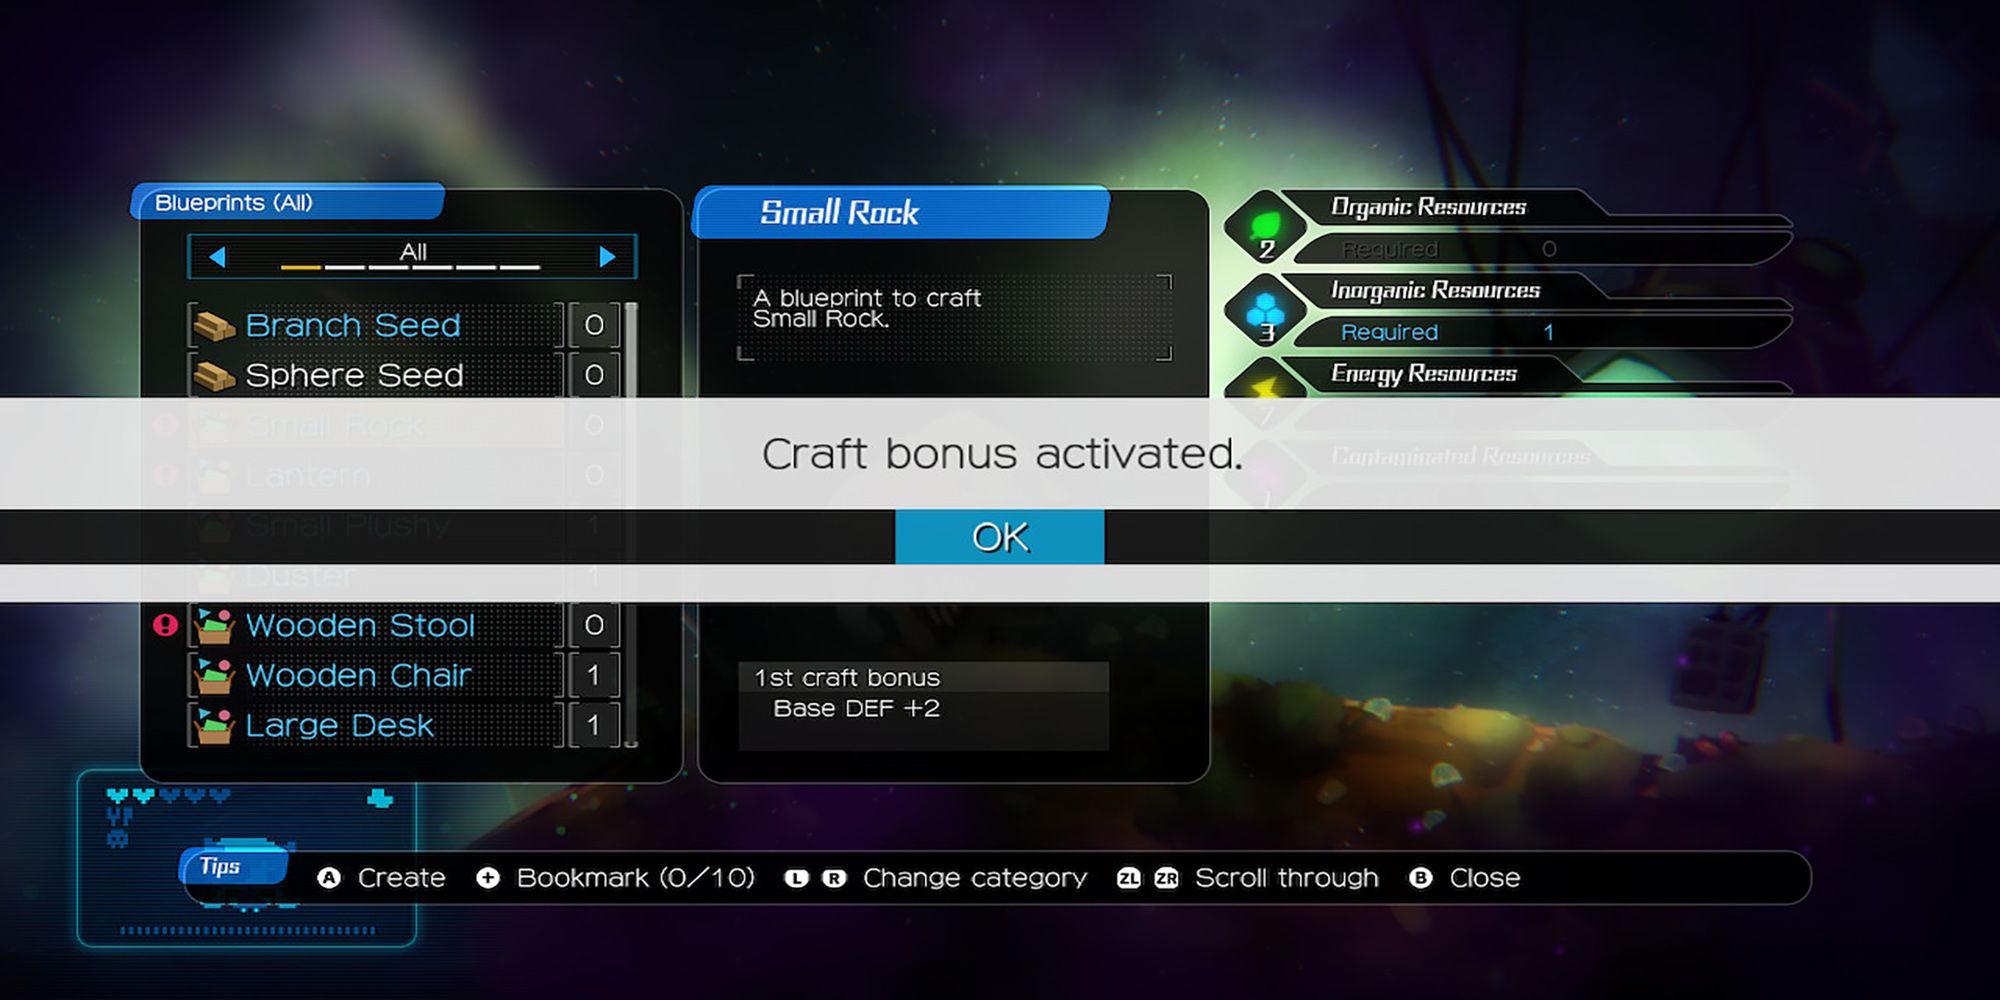 The Small Rock blueprint's craft bonus gets activated in Void Terrarium 2.